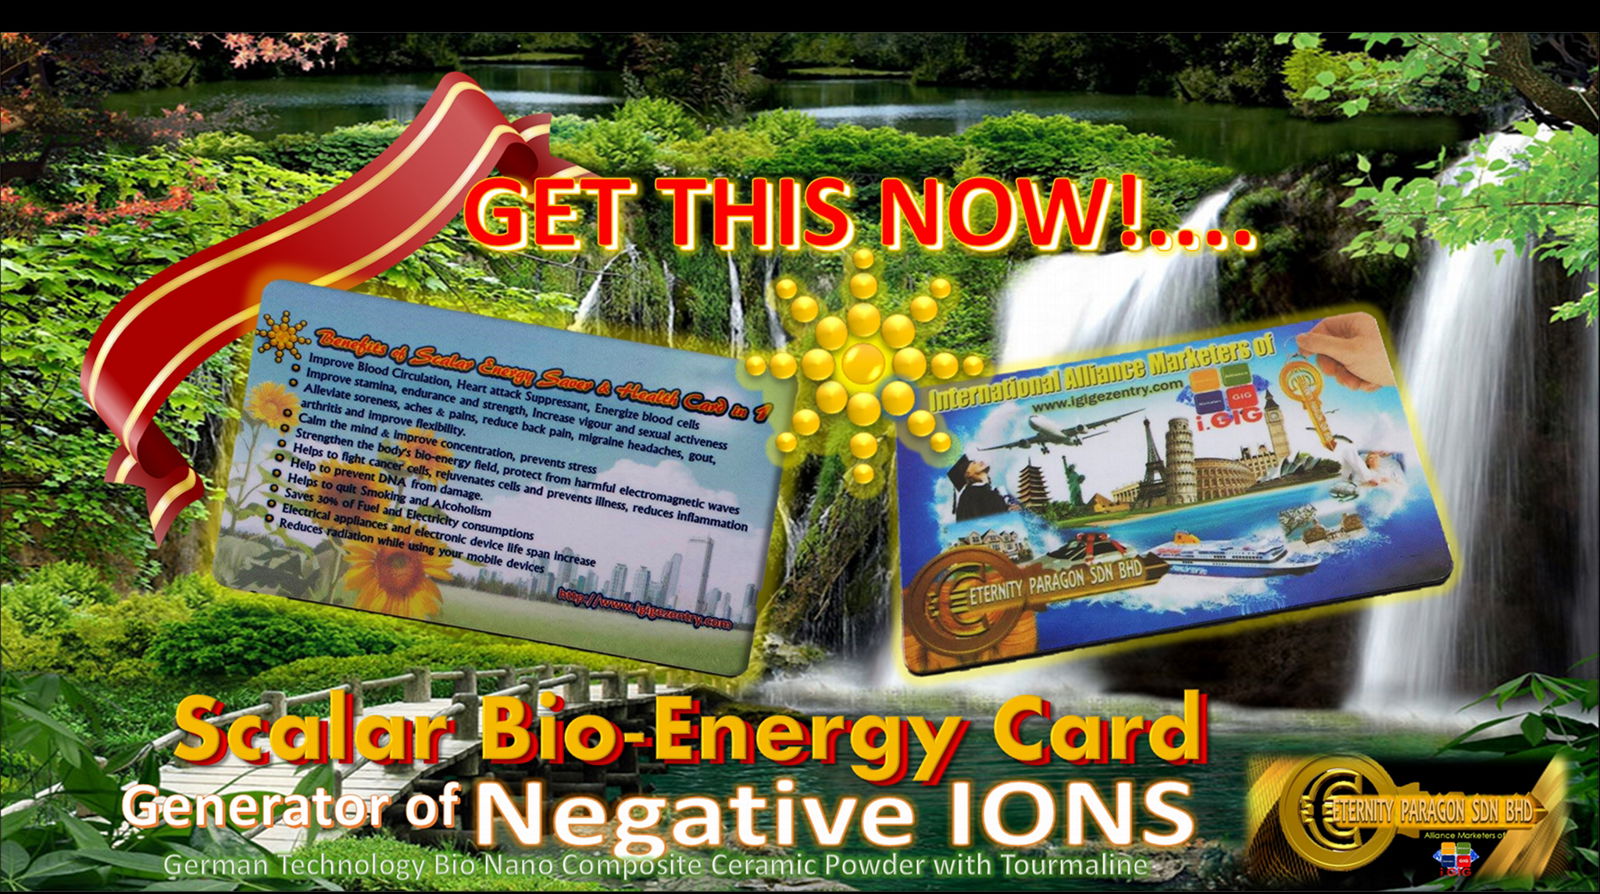 iGIG Bio-energy and Health Super Saver Card